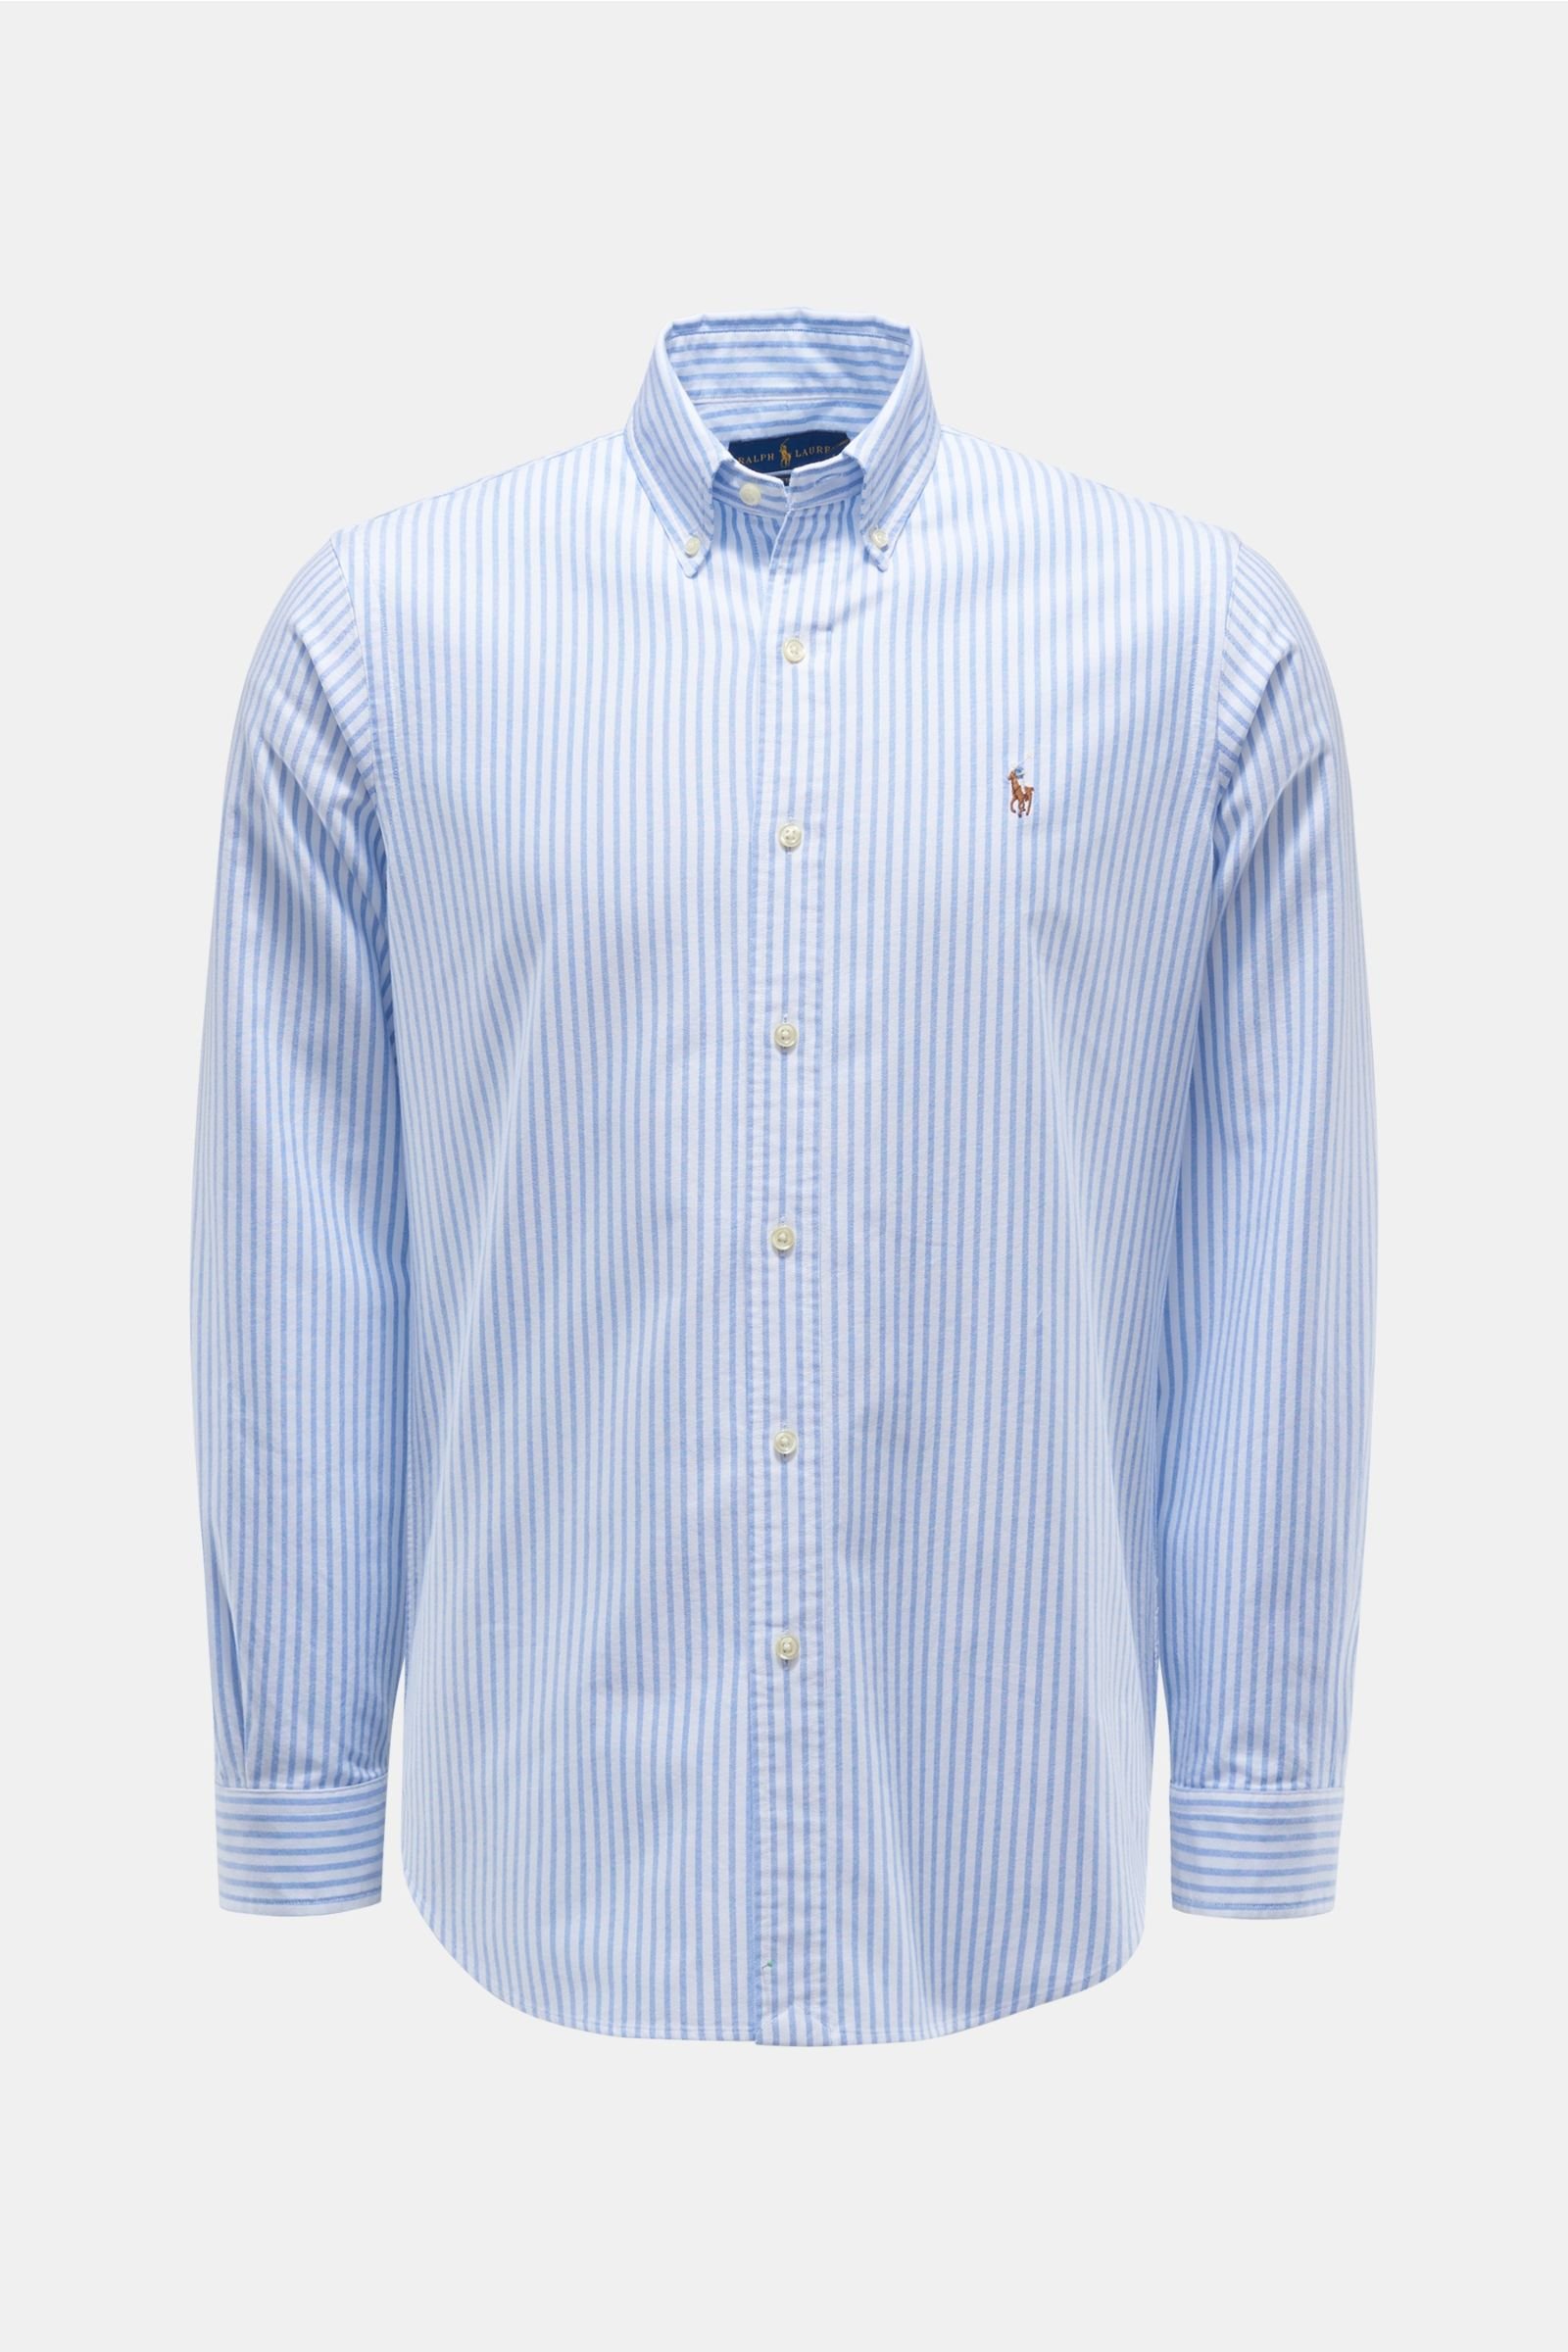 Oxfordhemd Button-Down-Kragen rauchblau/weiß gestreift